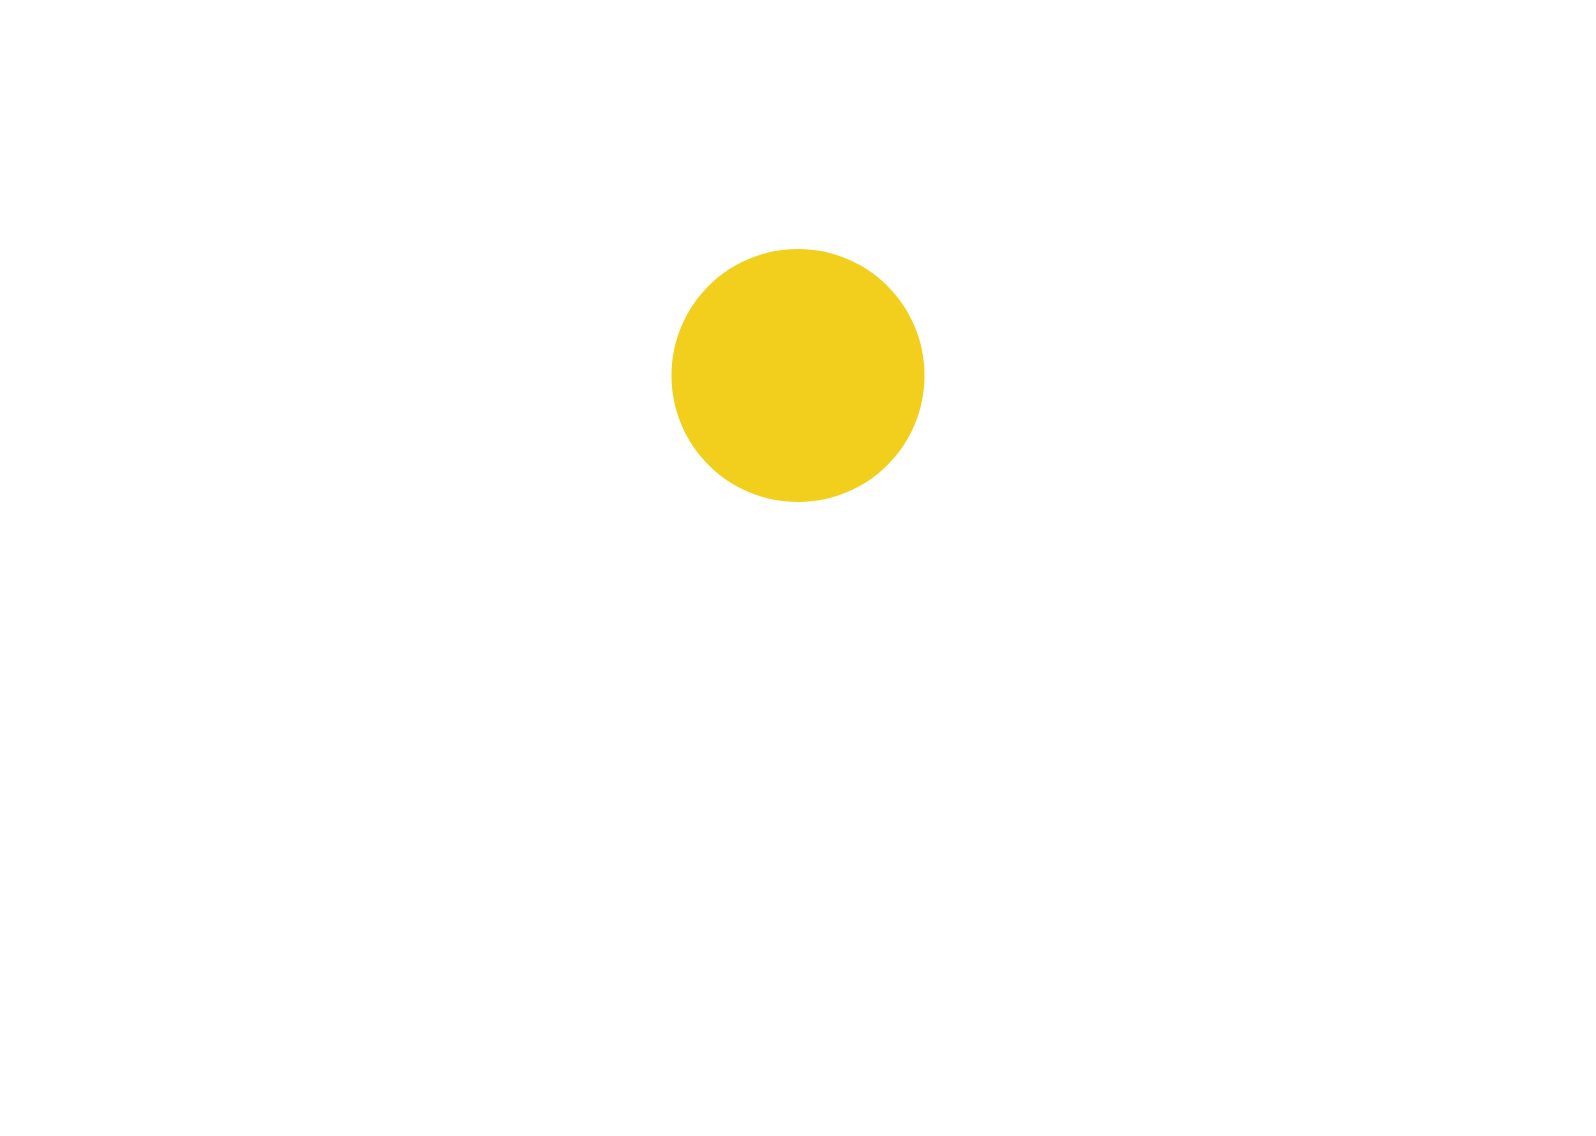 Saudi Investment Bank logo large for dark backgrounds (transparent PNG)